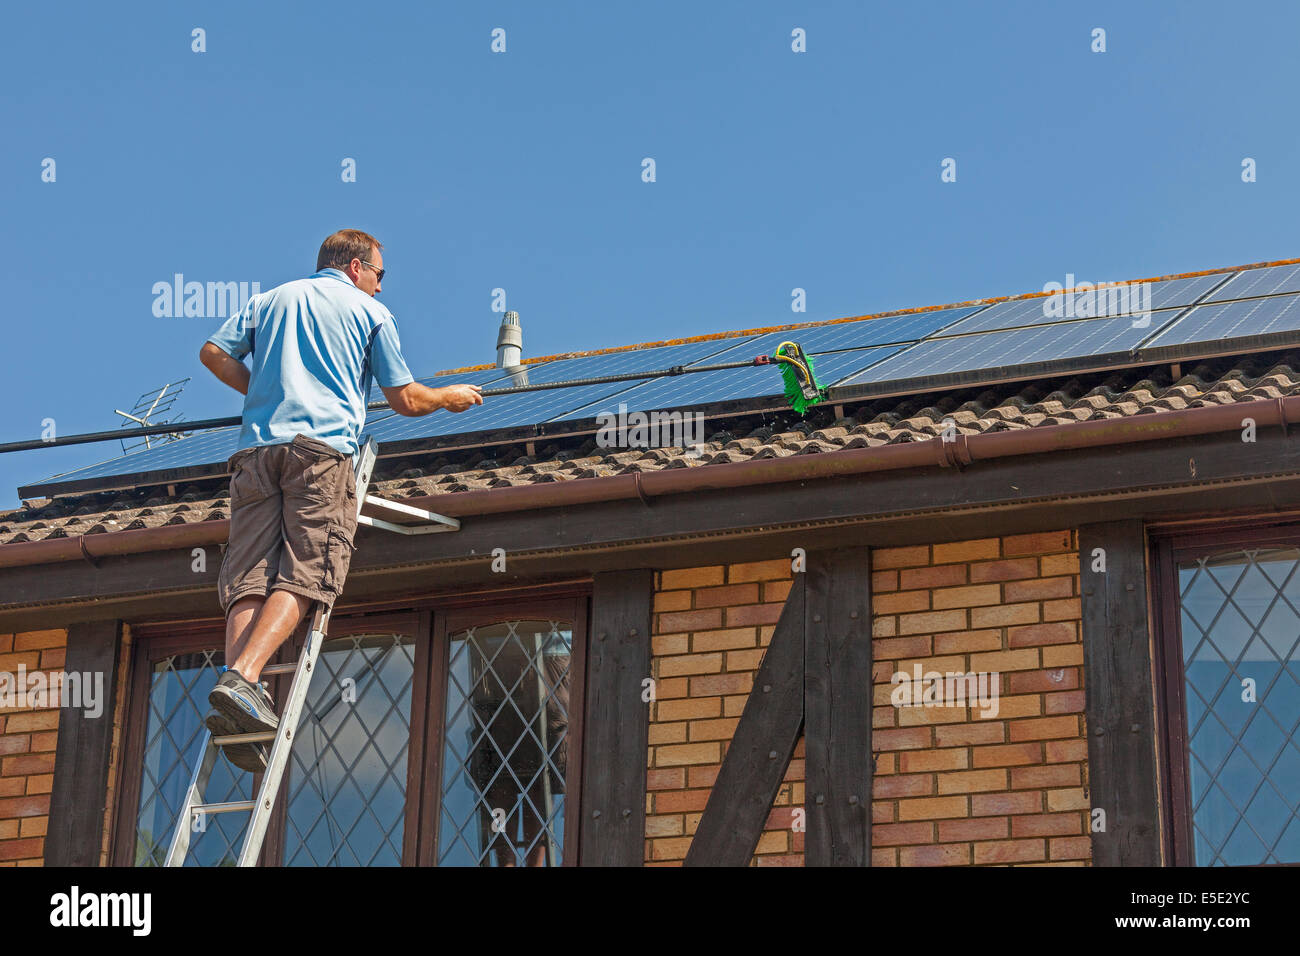 Reinigung angesammelten Schmutz, Dreck und Vogelkot von Sonnenkollektoren auf dem Dach Photovoltaik (PV). JMH6245 Stockfoto